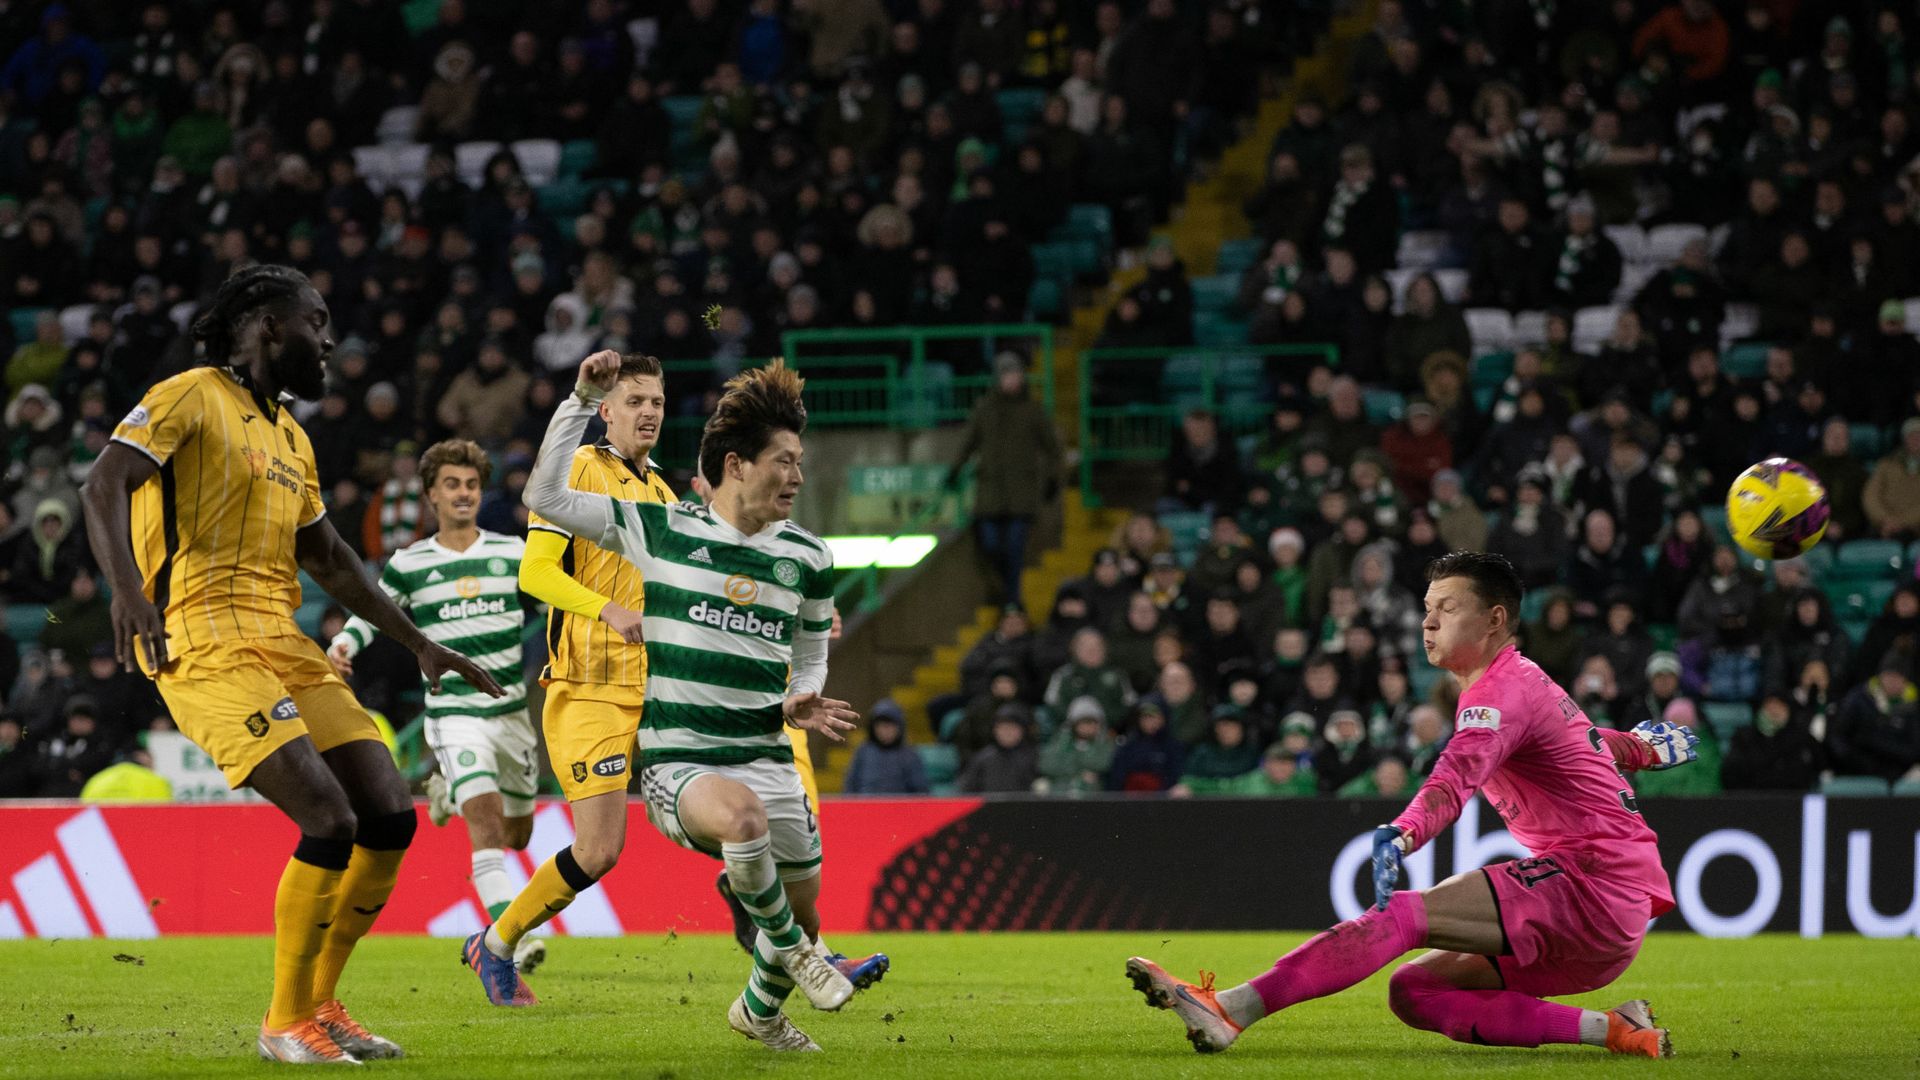 Celtic hold on for 2-1 win against Livingston LIVE!